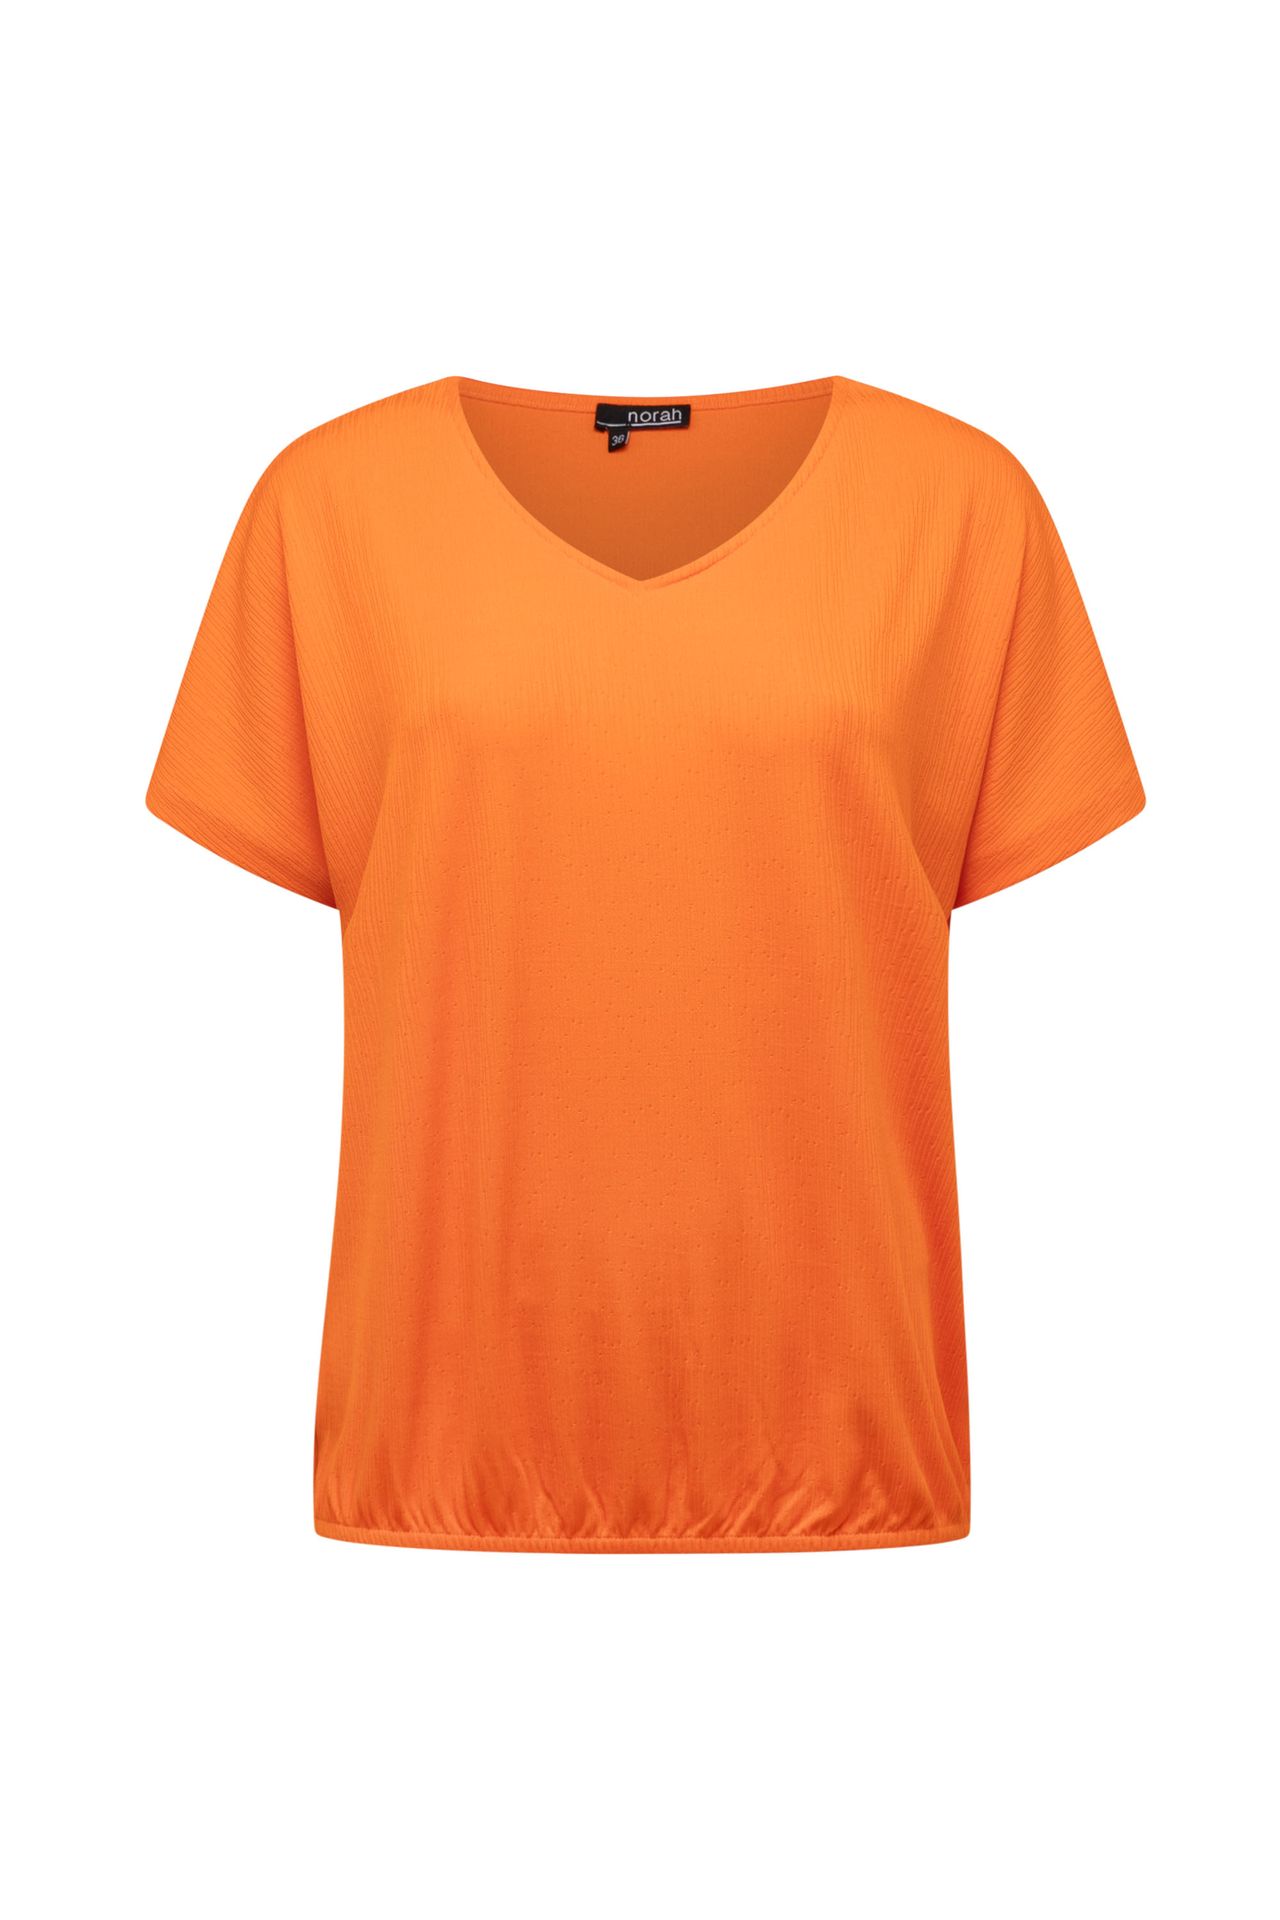 Norah Oranje shirt orange 211648-700